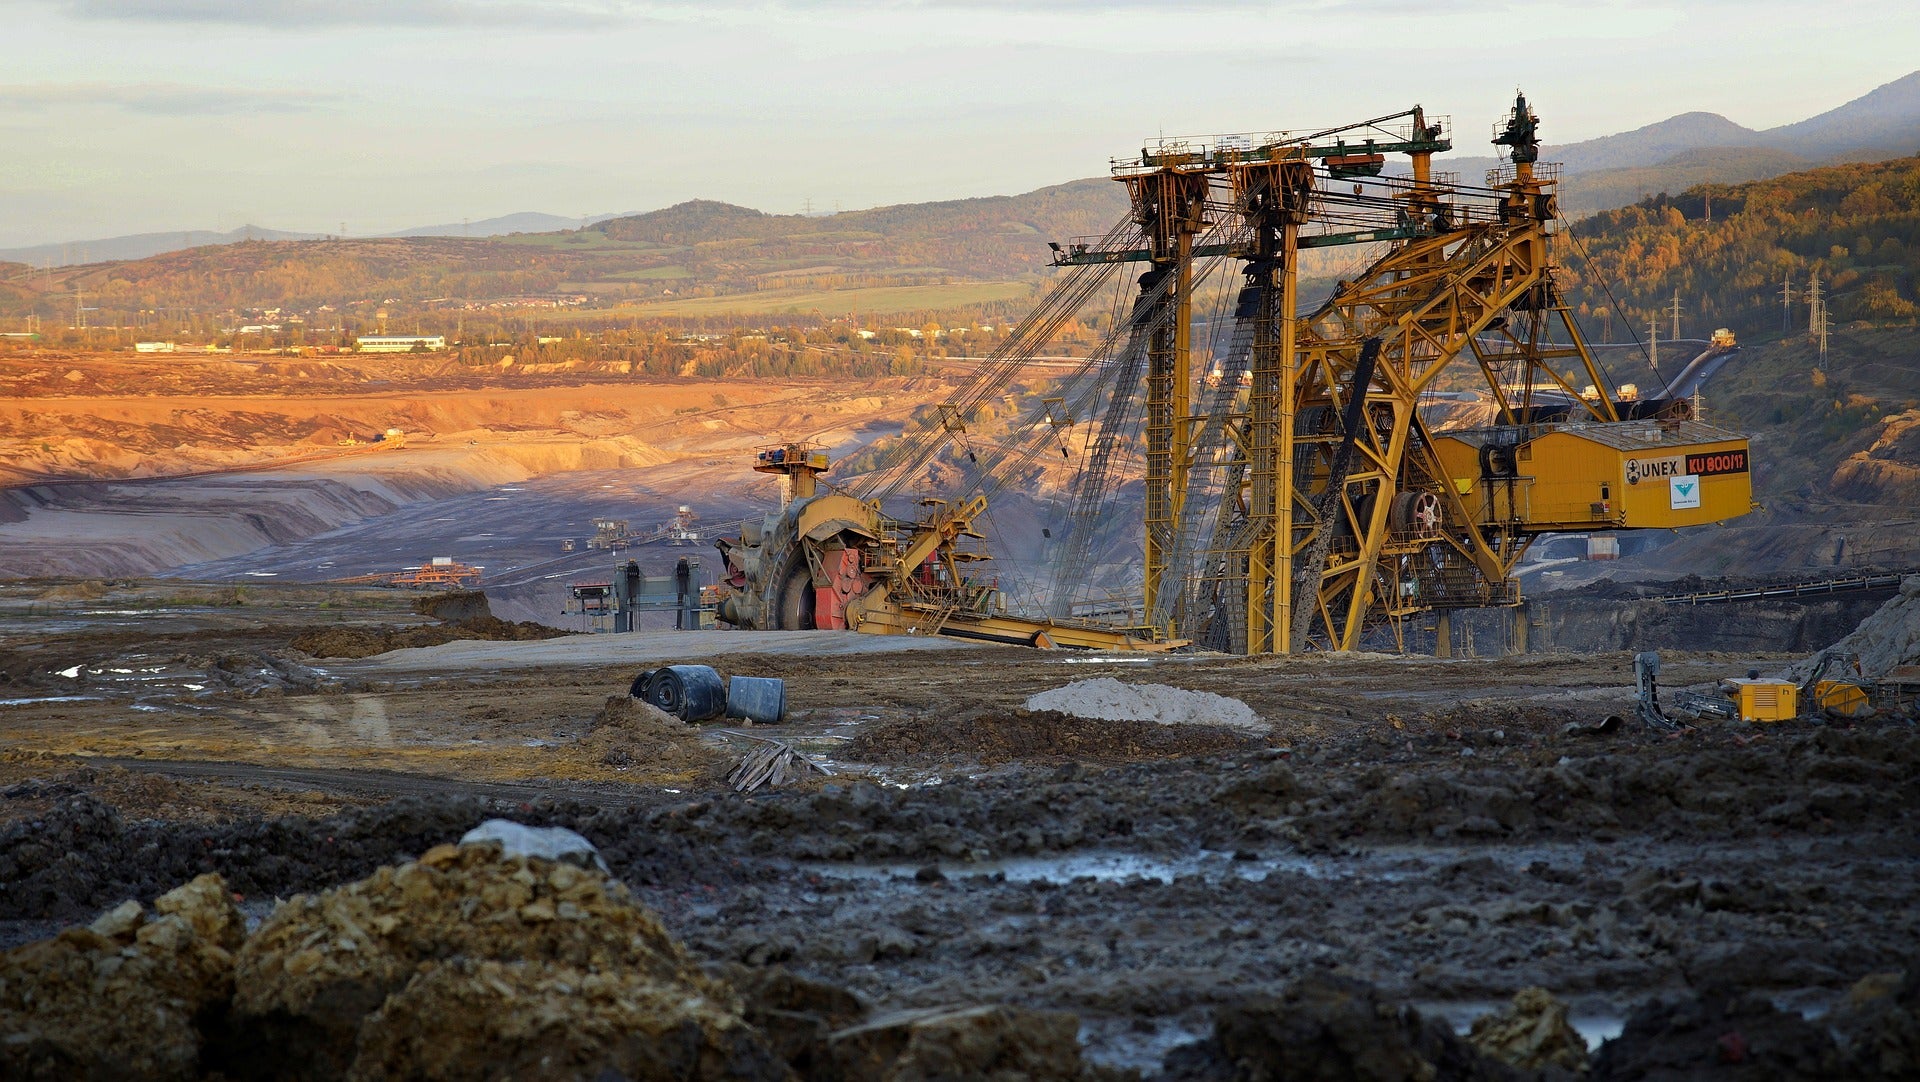 Coal mine accident kills 14 miners in China